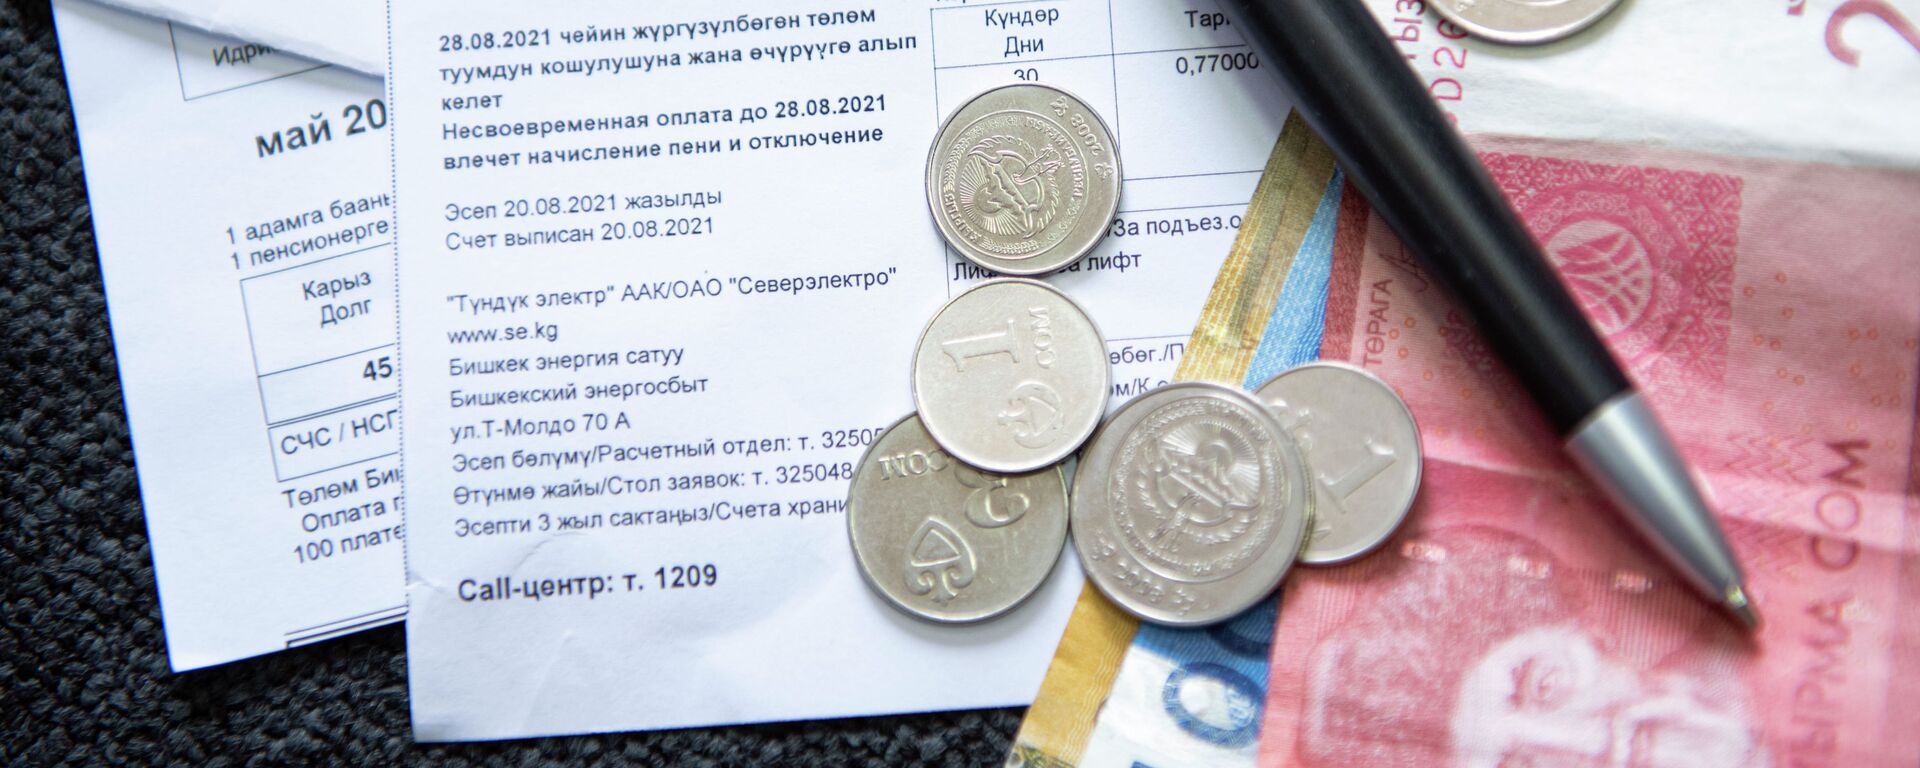 Счет-квитанции за коммунальные услуги и деньги на столе. Иллюстративное фото - Sputnik Кыргызстан, 1920, 19.11.2021